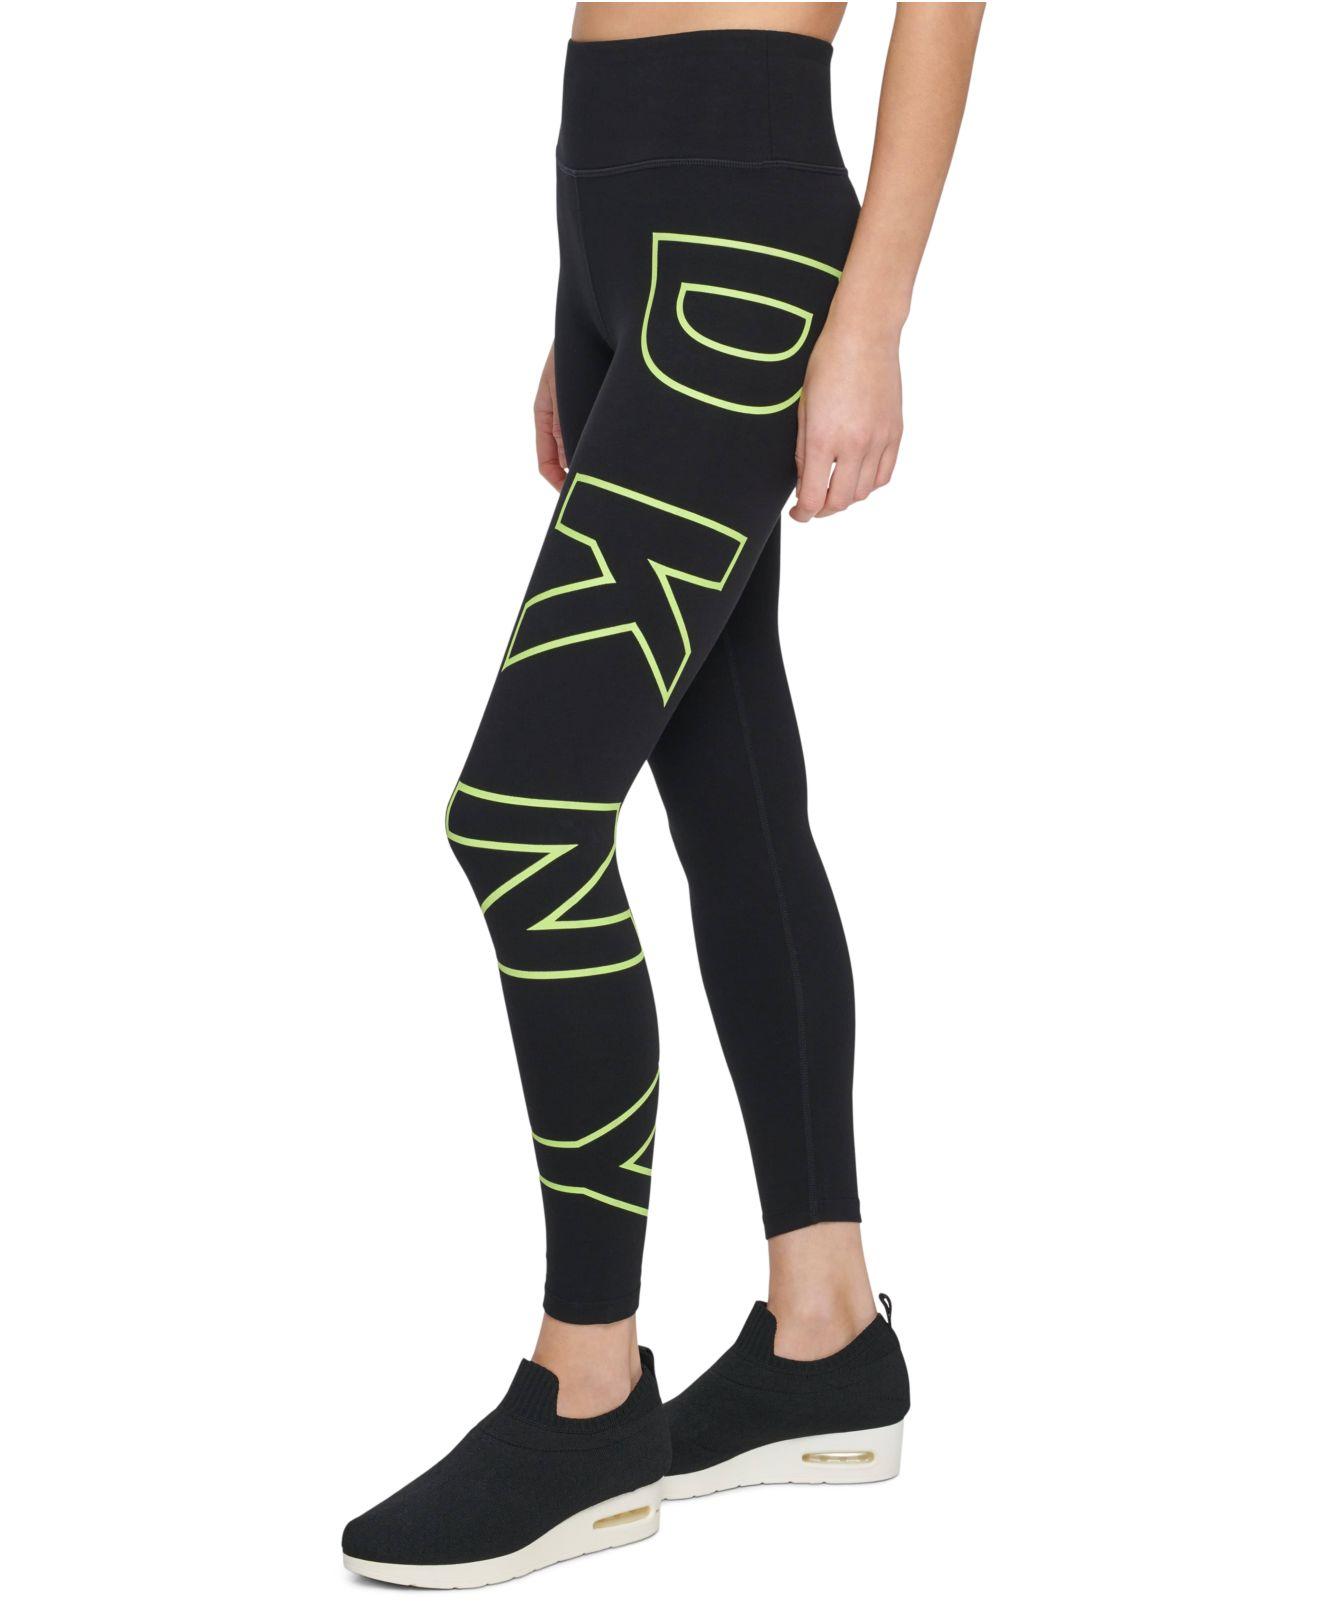 DKNY High-waisted Full-length Logo Legging in Black